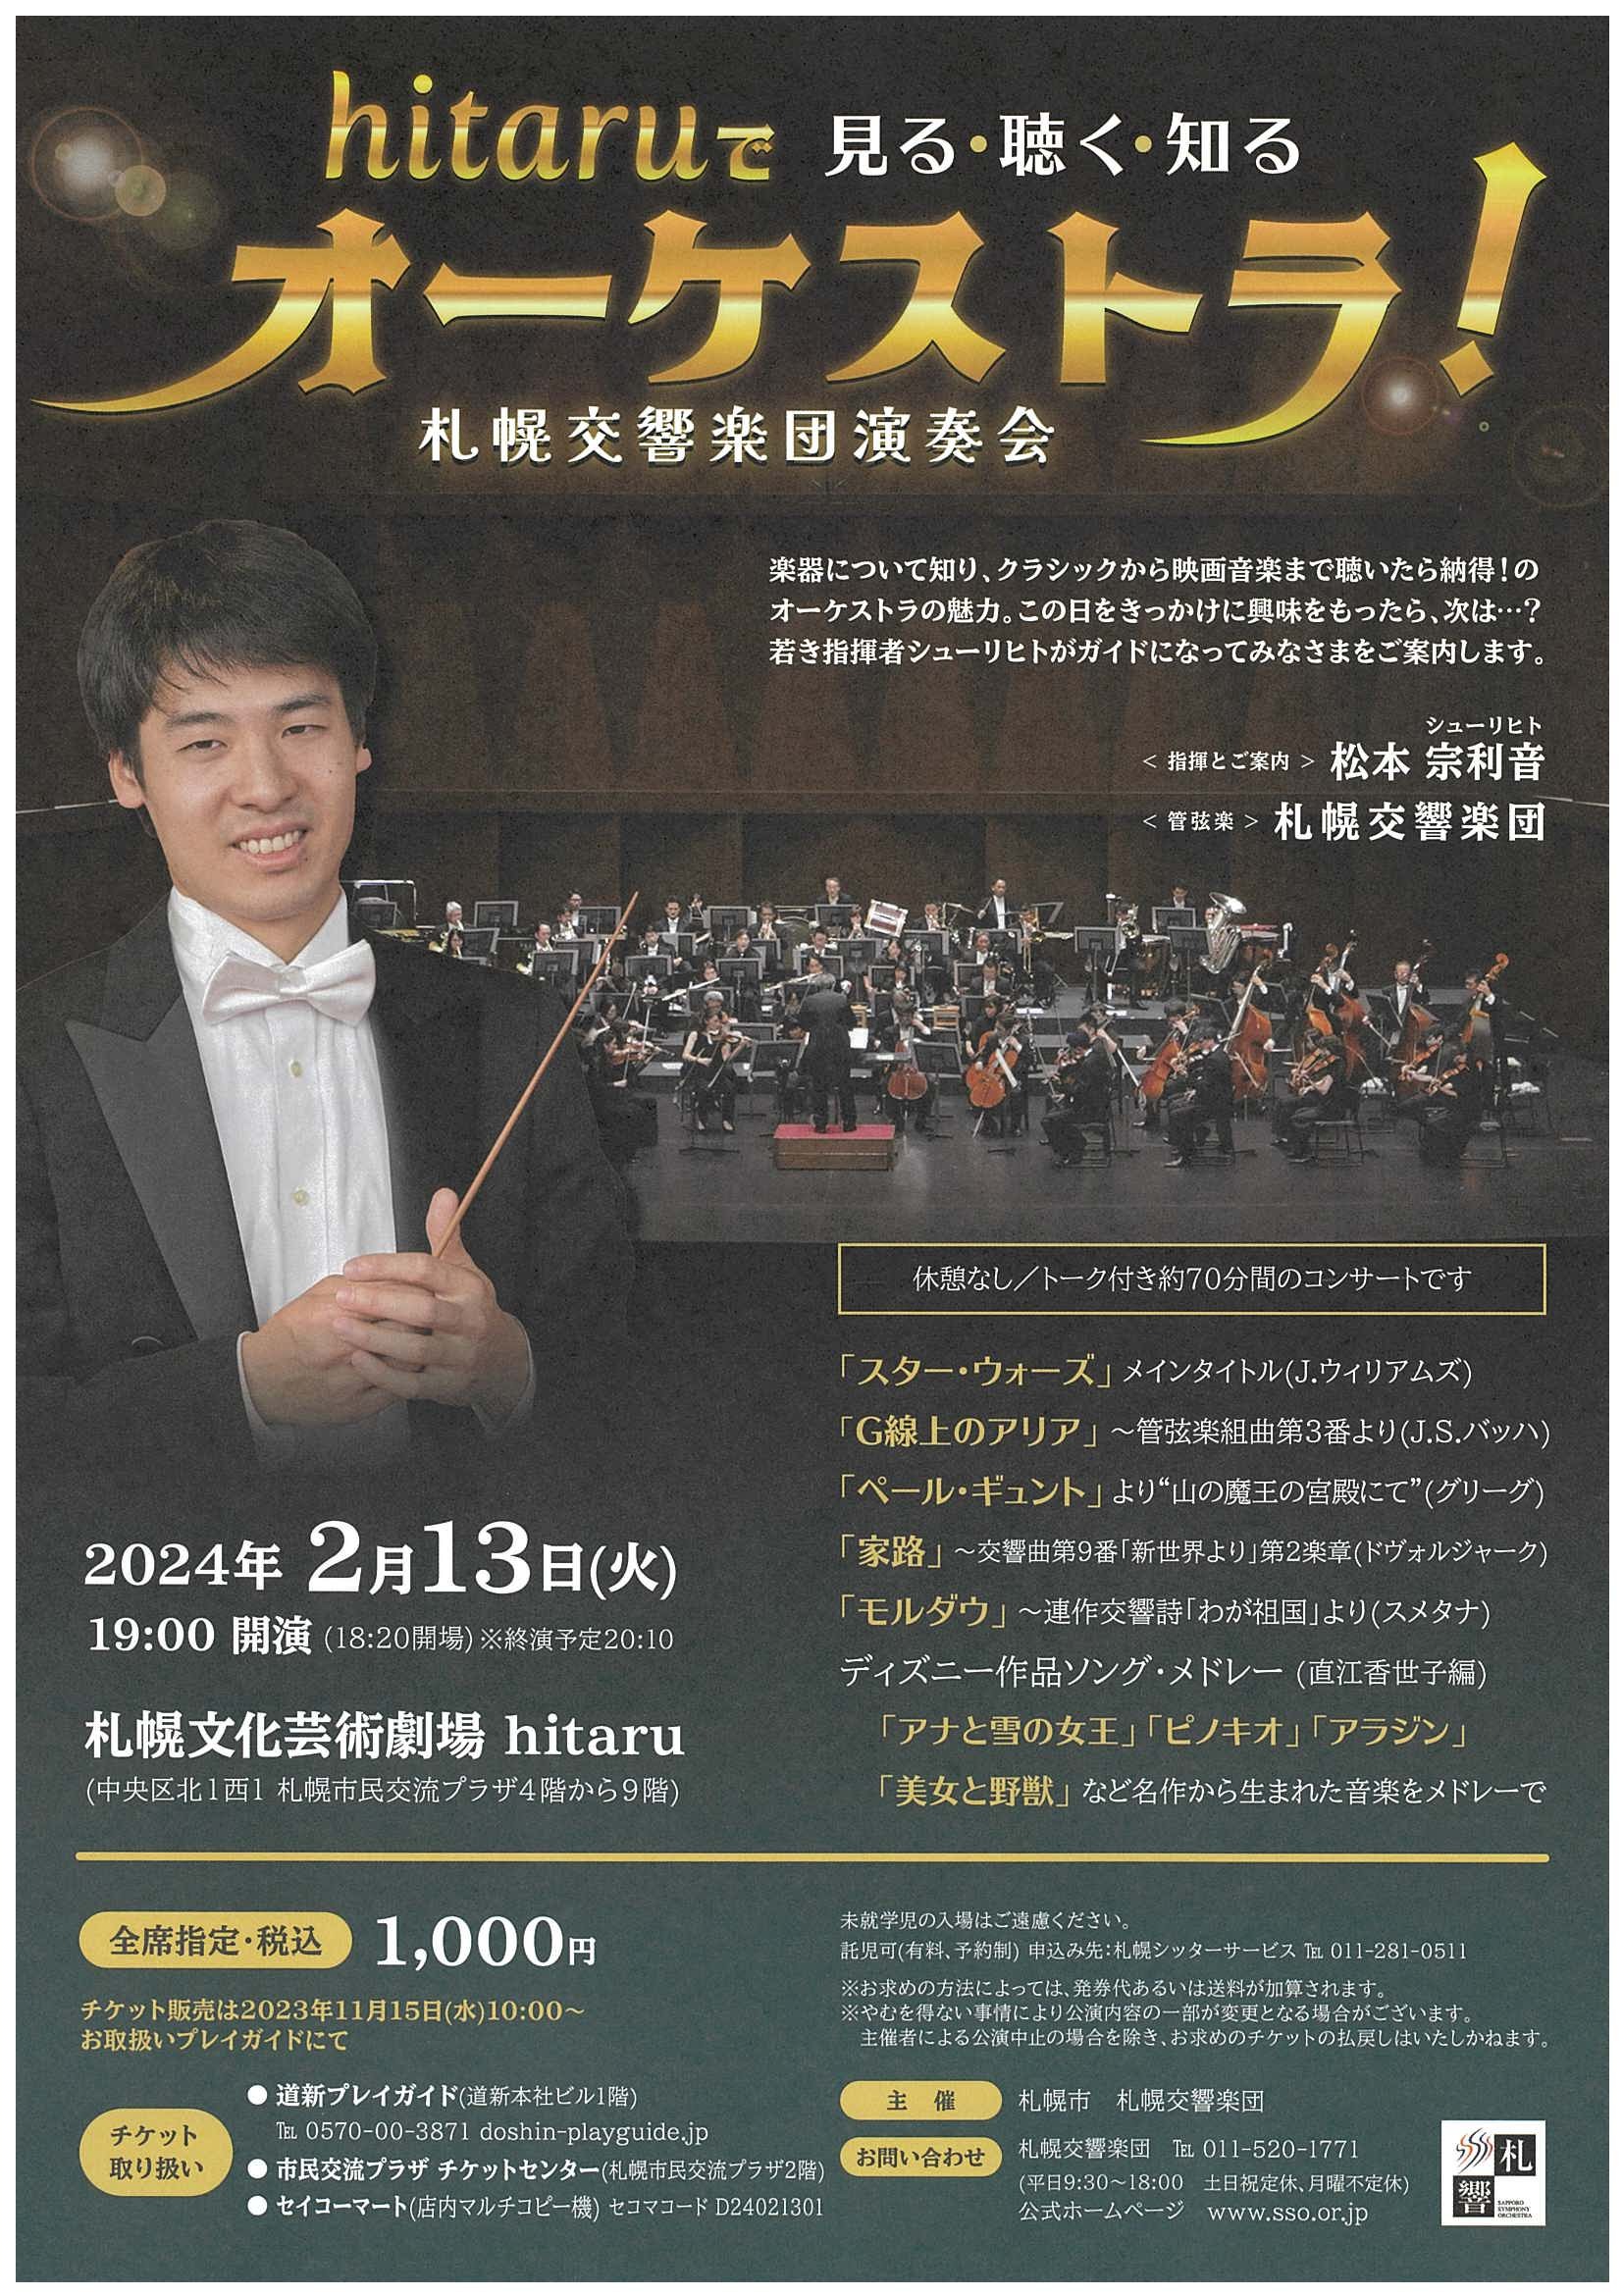 【当日券】2月13日『hitaruで見る・聴く・知るオーケストラ』当日券販売とご来場の皆さまへ